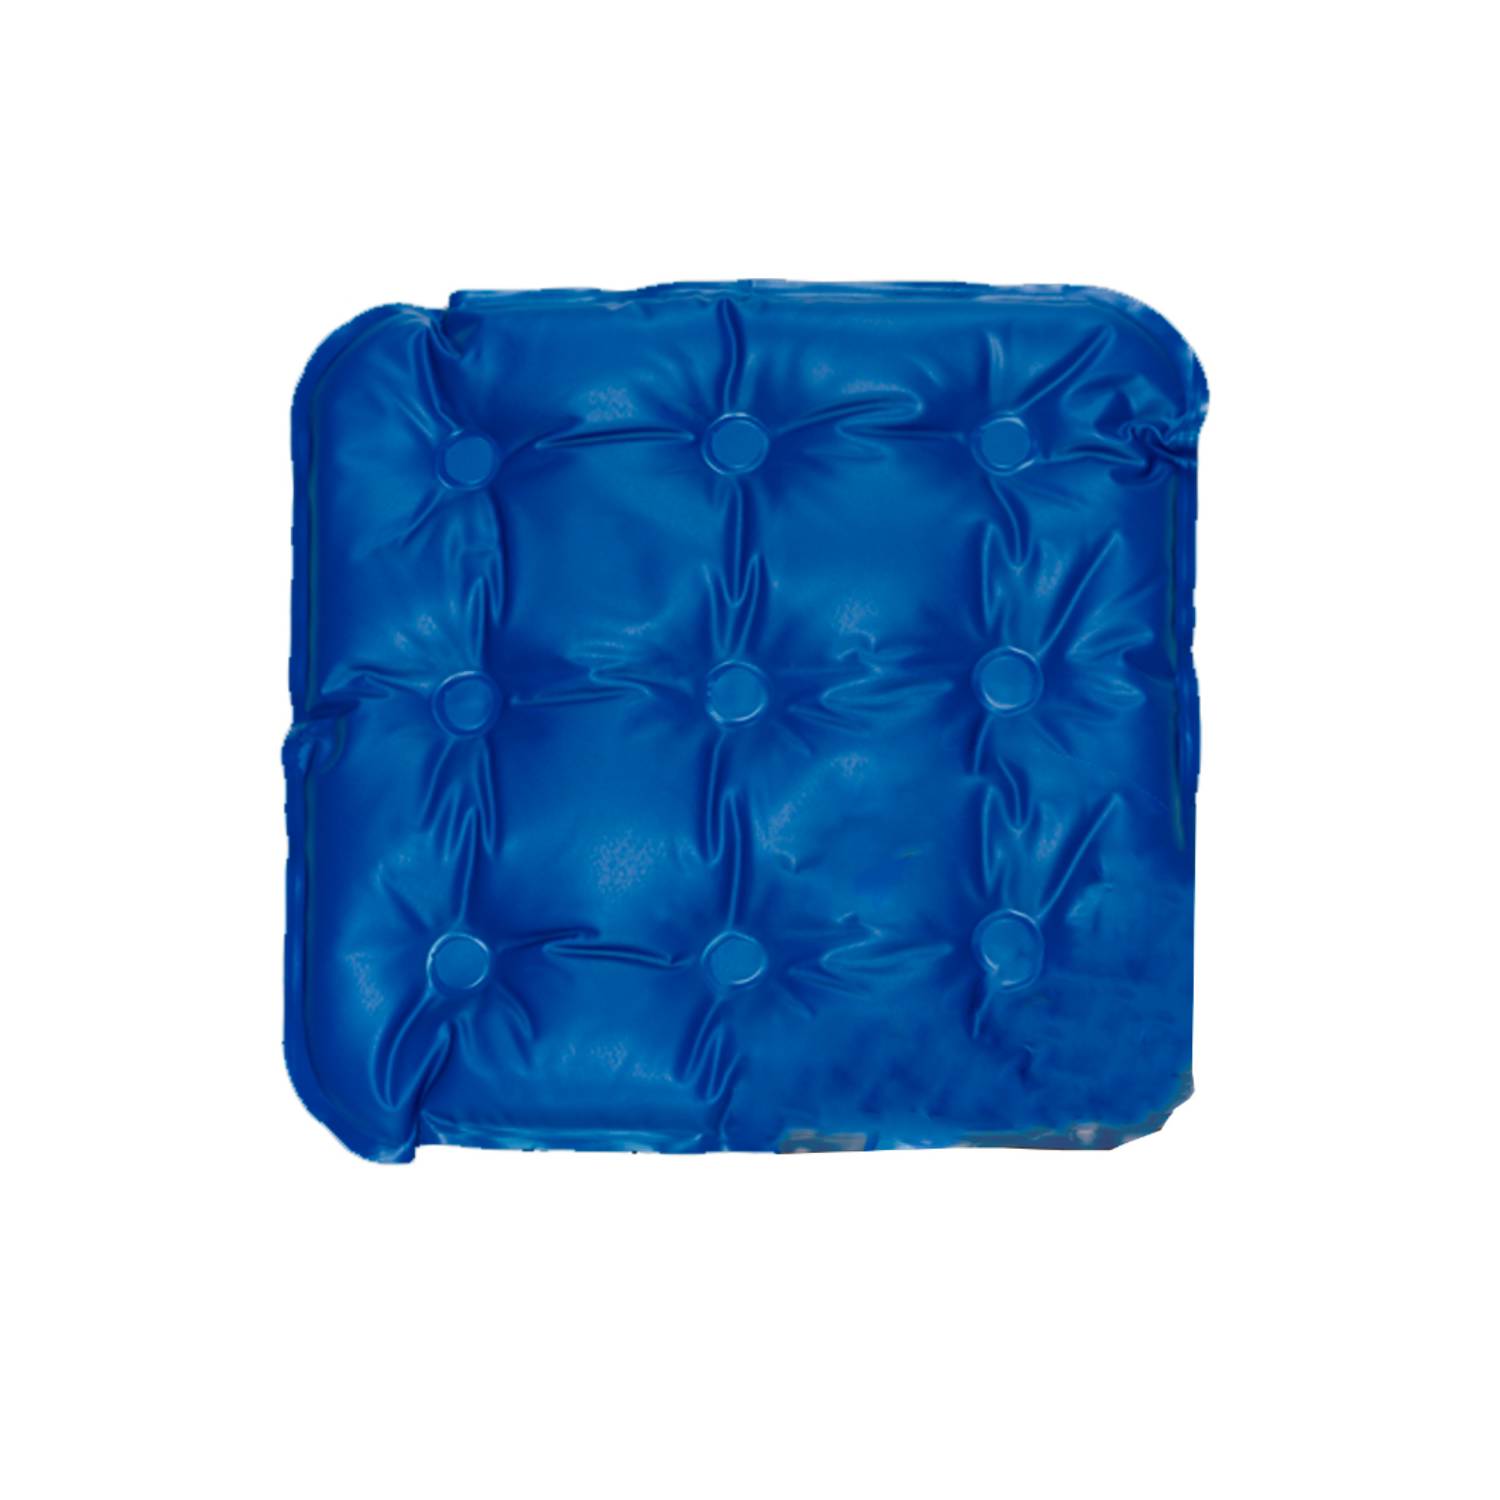 GEL Para asiento de MOTO volcano pro color Azul 2cm espesor VOLCANO